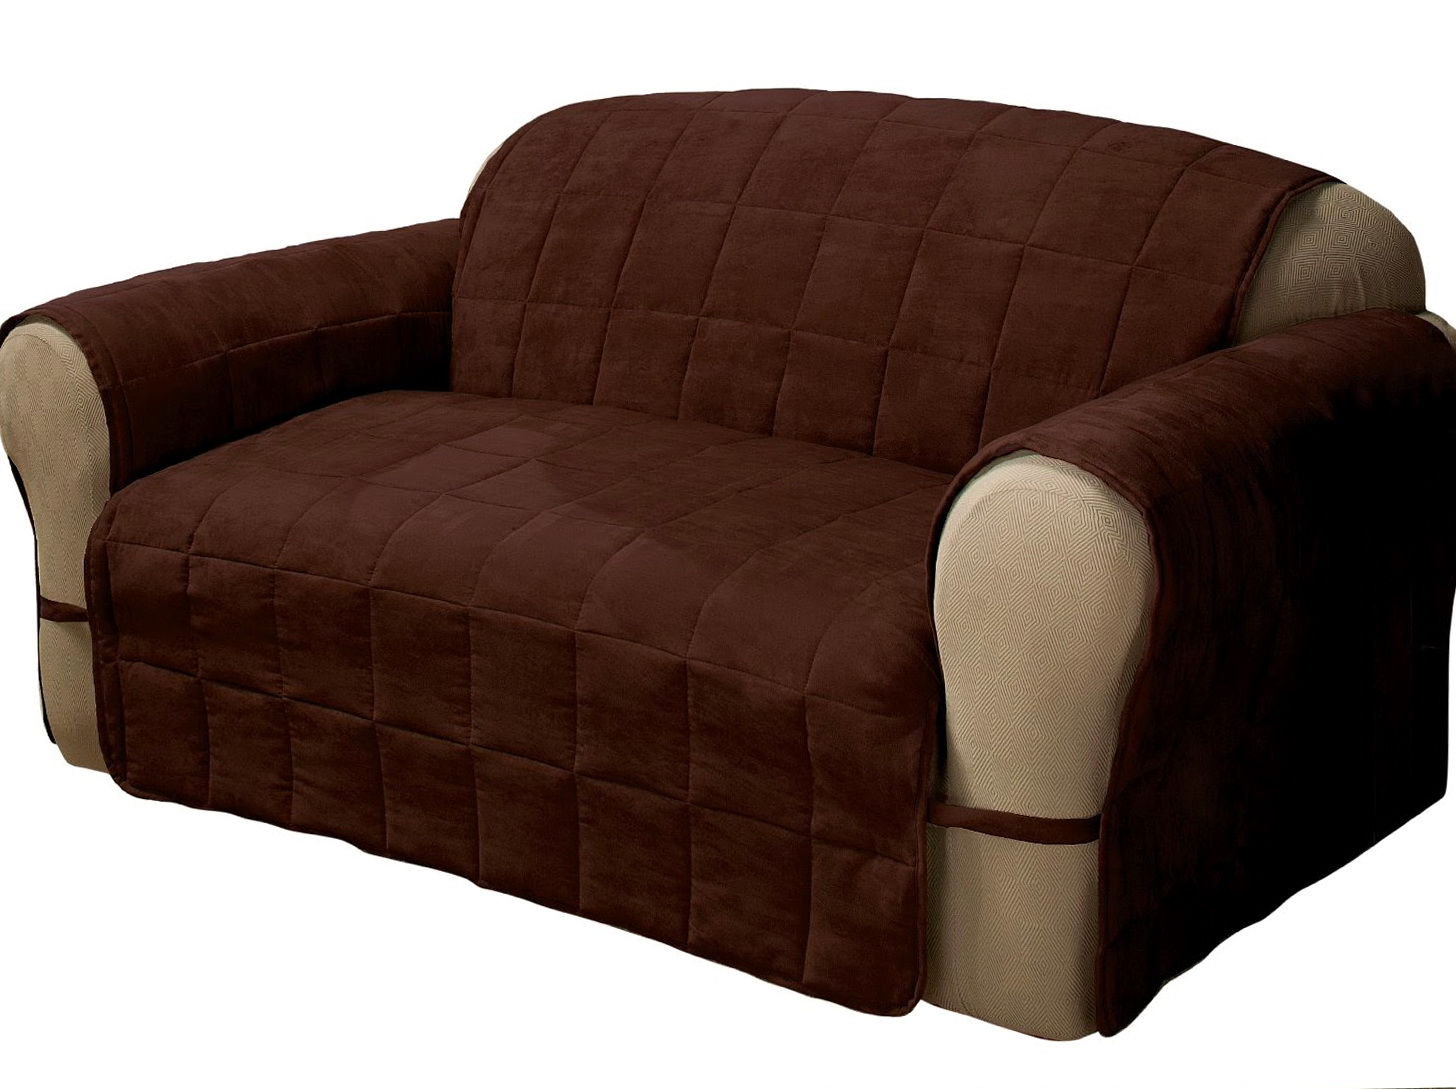 Leather sofa cushion covers